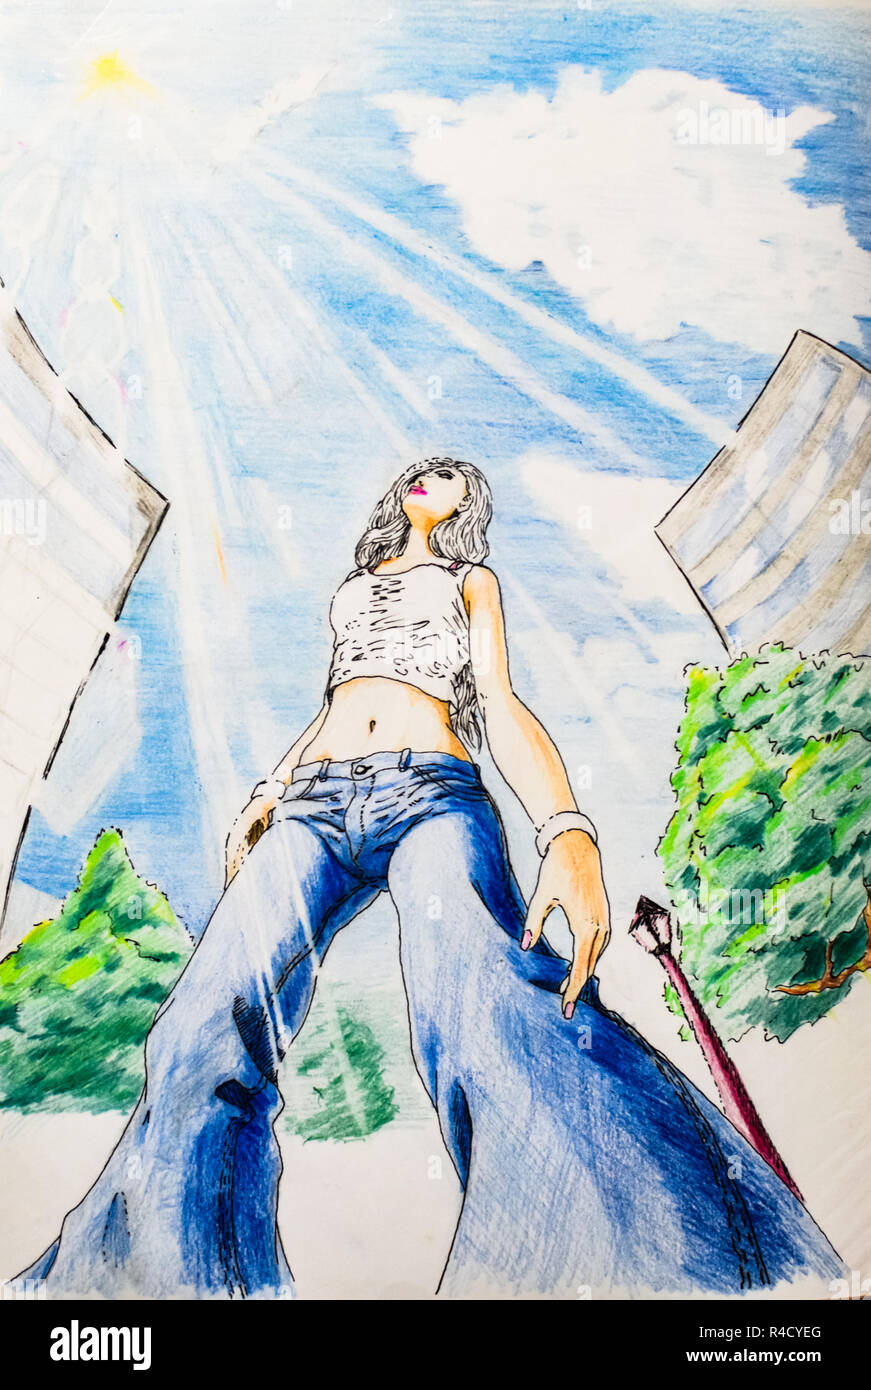 Zeichnen mit Bleistift, einem Mädchen, das bei schönem Wetter Spaziergänge  um die Stadt herum, die Ansicht von unterhalb der womans Beine. Jeans und  T-Shirt auf das Mädchen Stockfotografie - Alamy